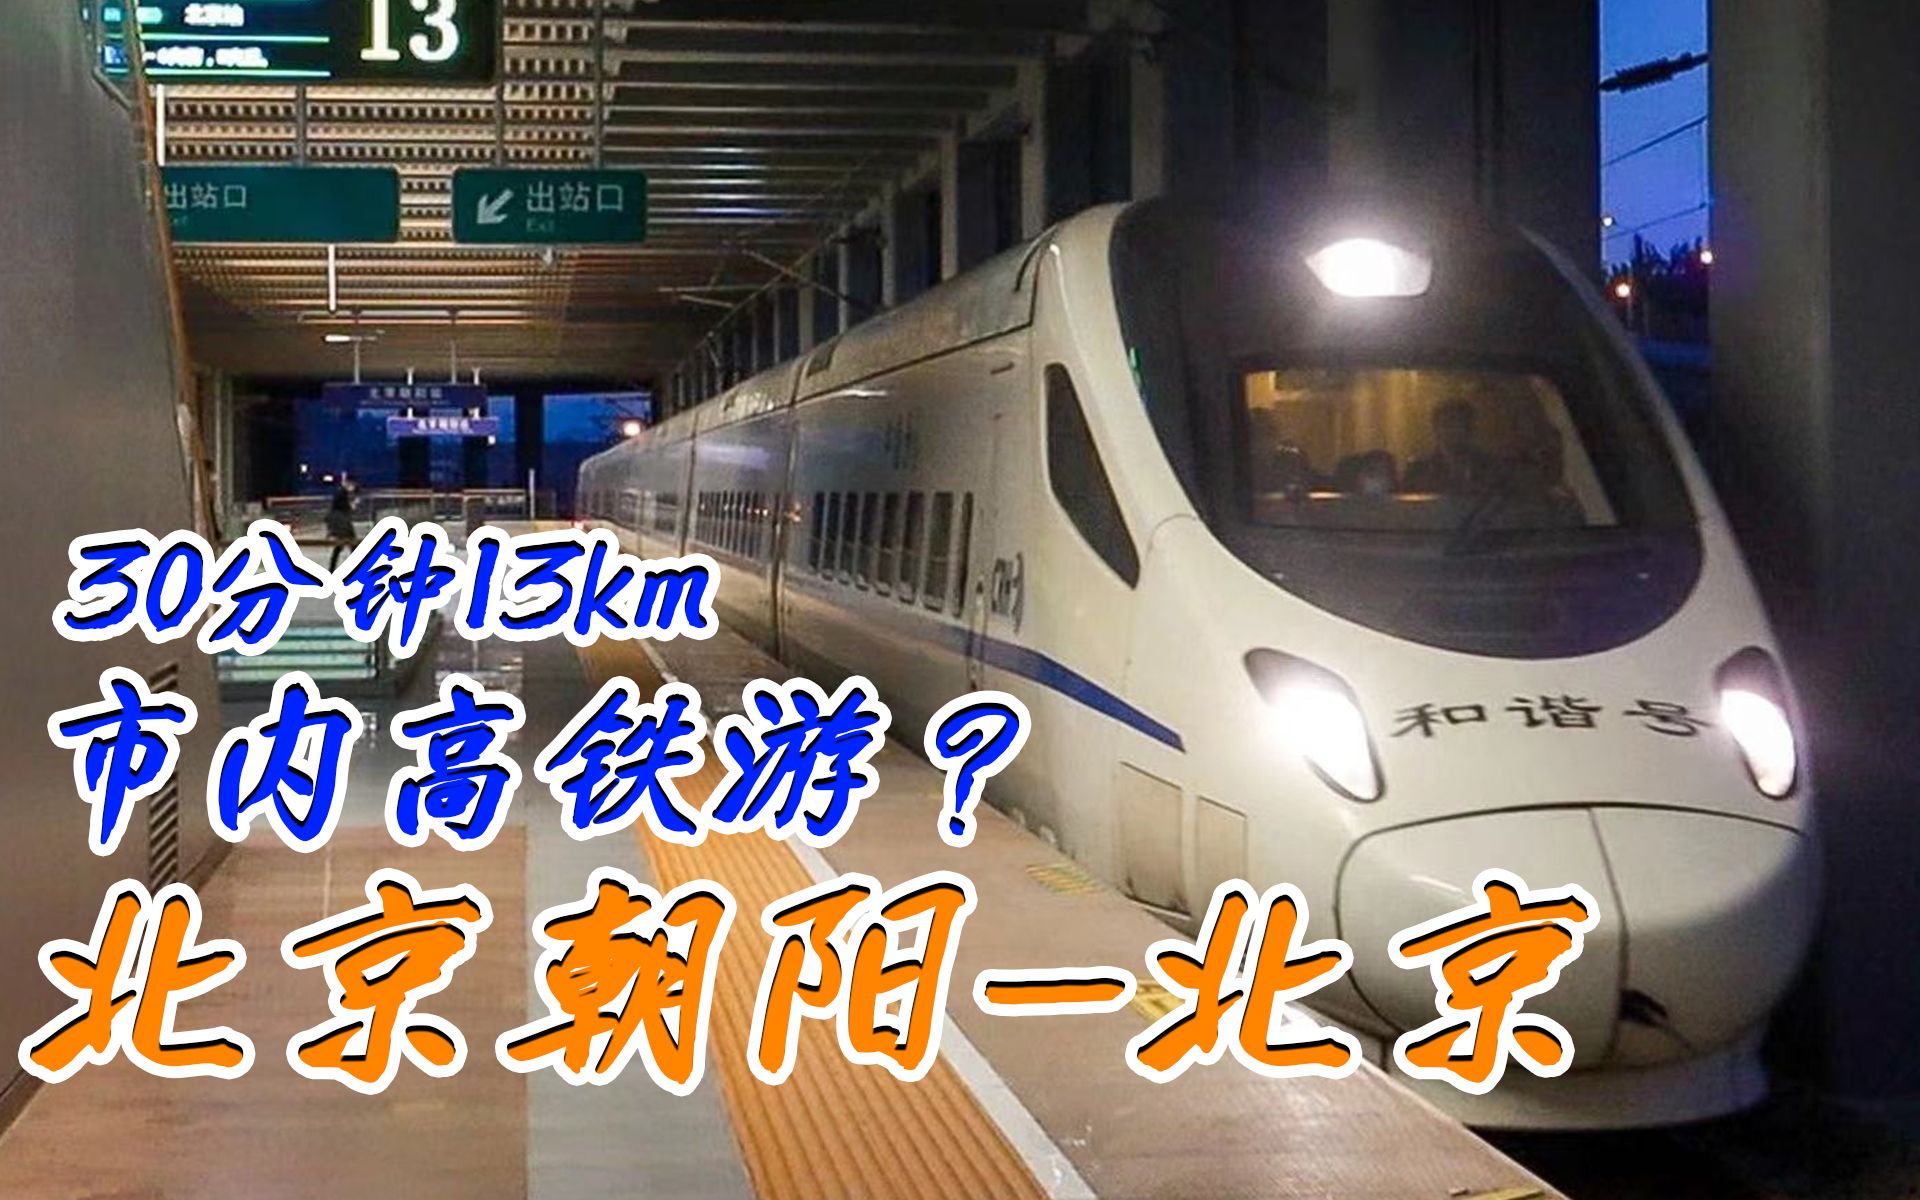 中国铁路30分钟13公里京沈高铁crh5a北京朝阳站北京站体验